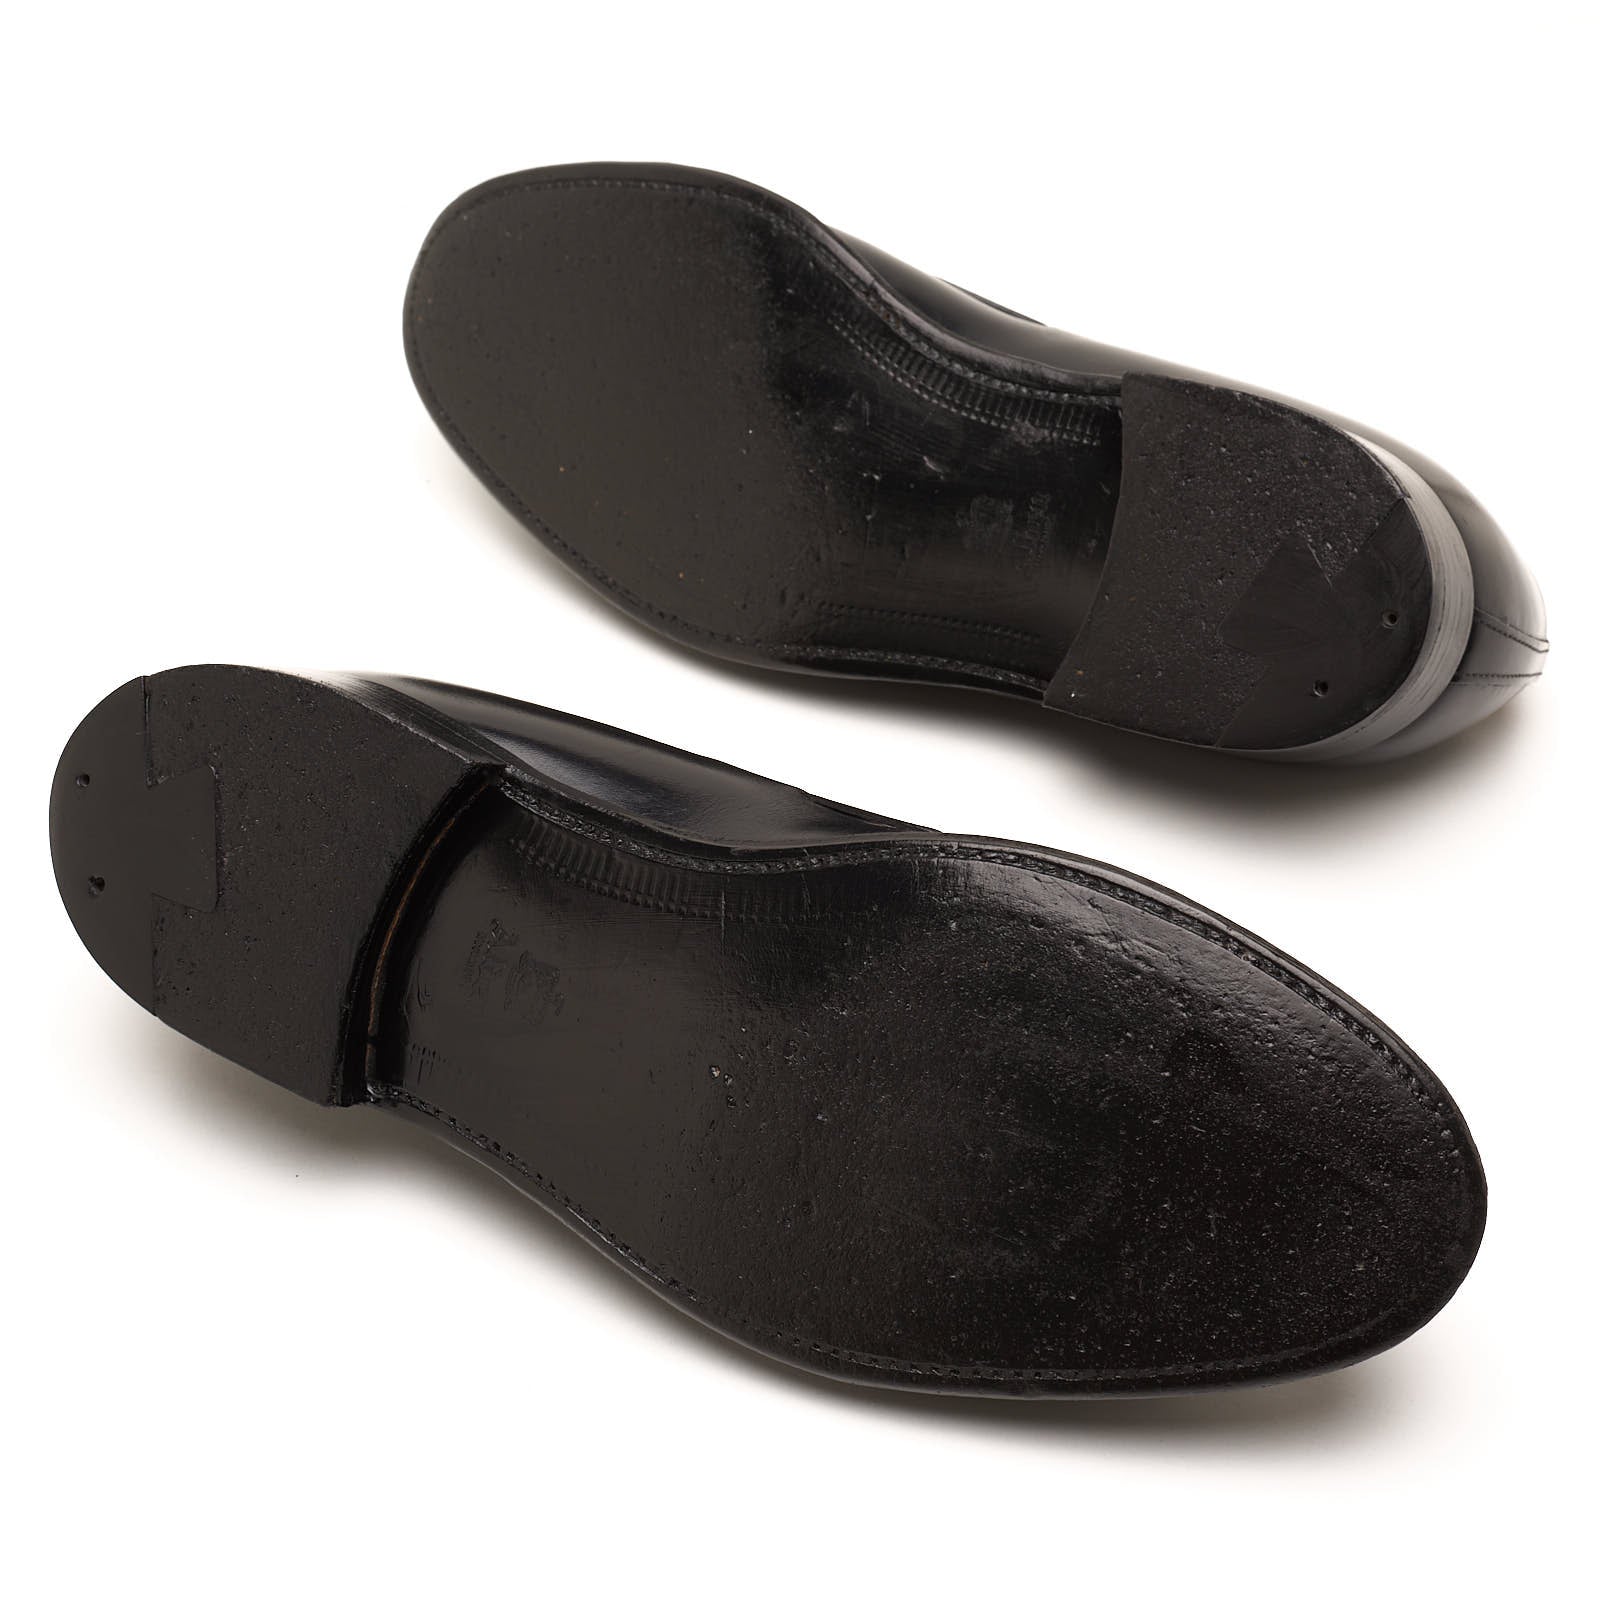 ALDEN 660 Black Calf Leather Tassel Moccasin Loafer Shoes EU 8.5 US 9 C/E